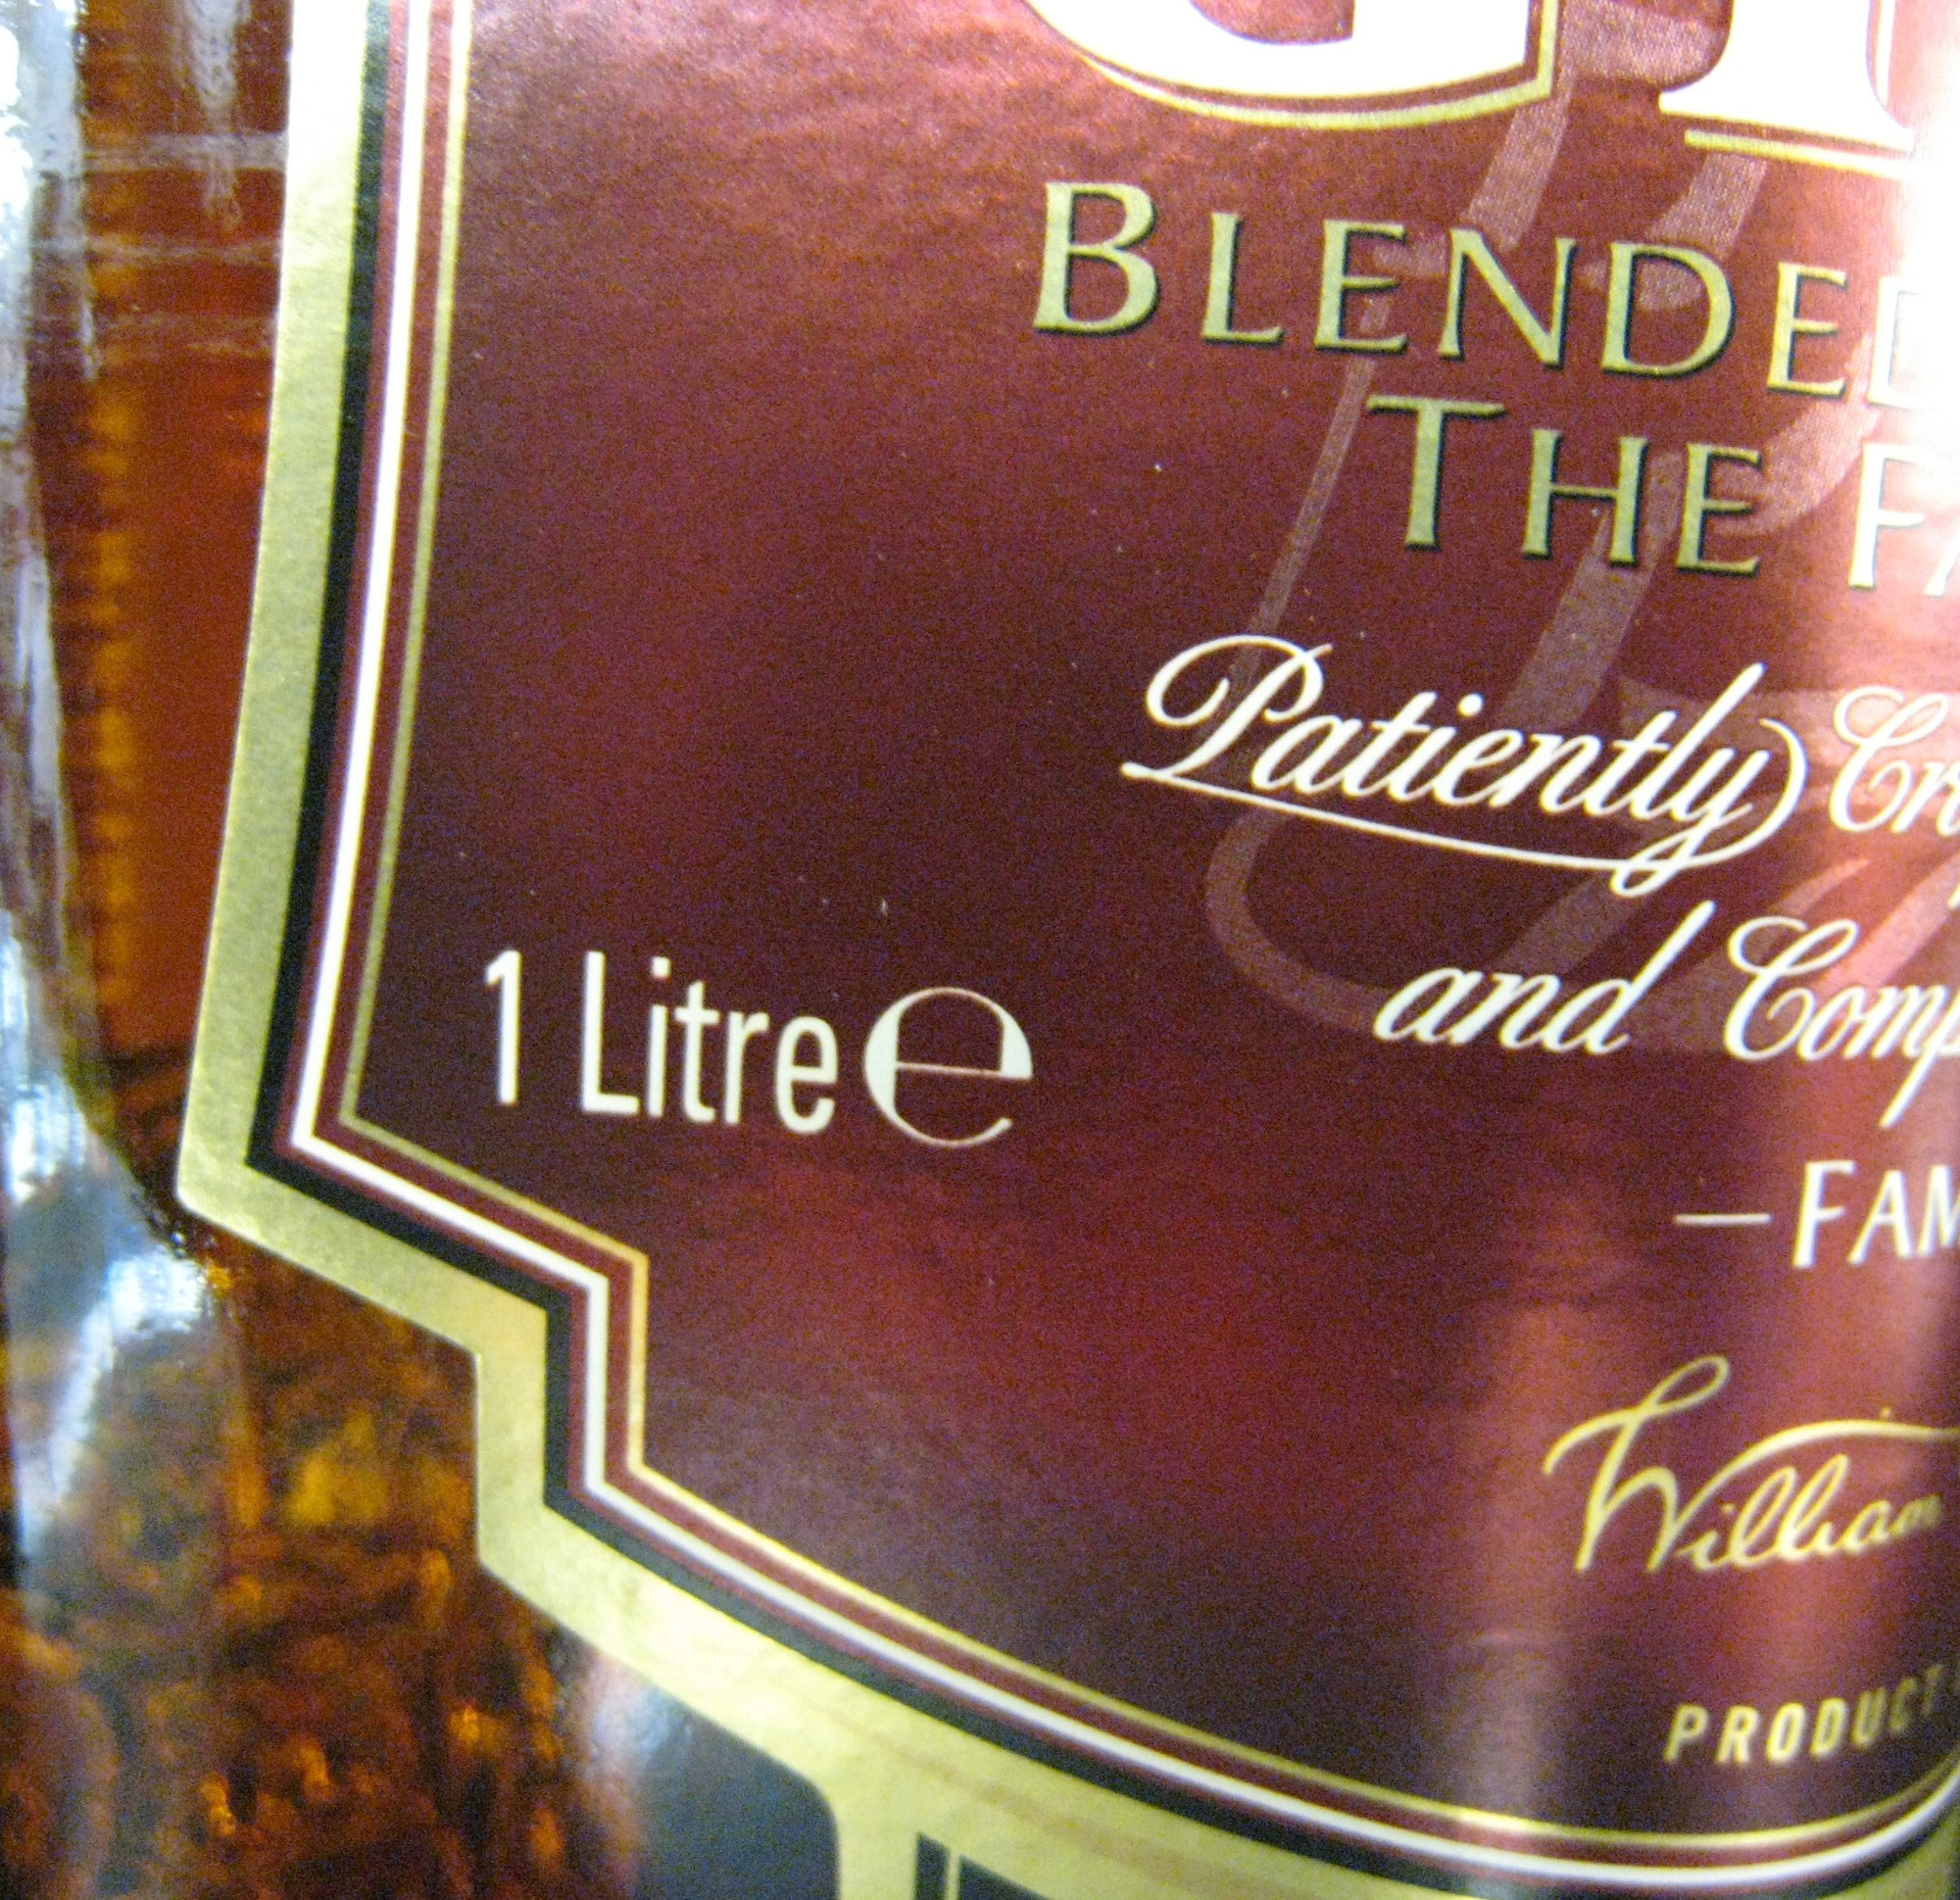 Whisky Ecosse blended sans âge 100 cl Grant's - Ingrédients